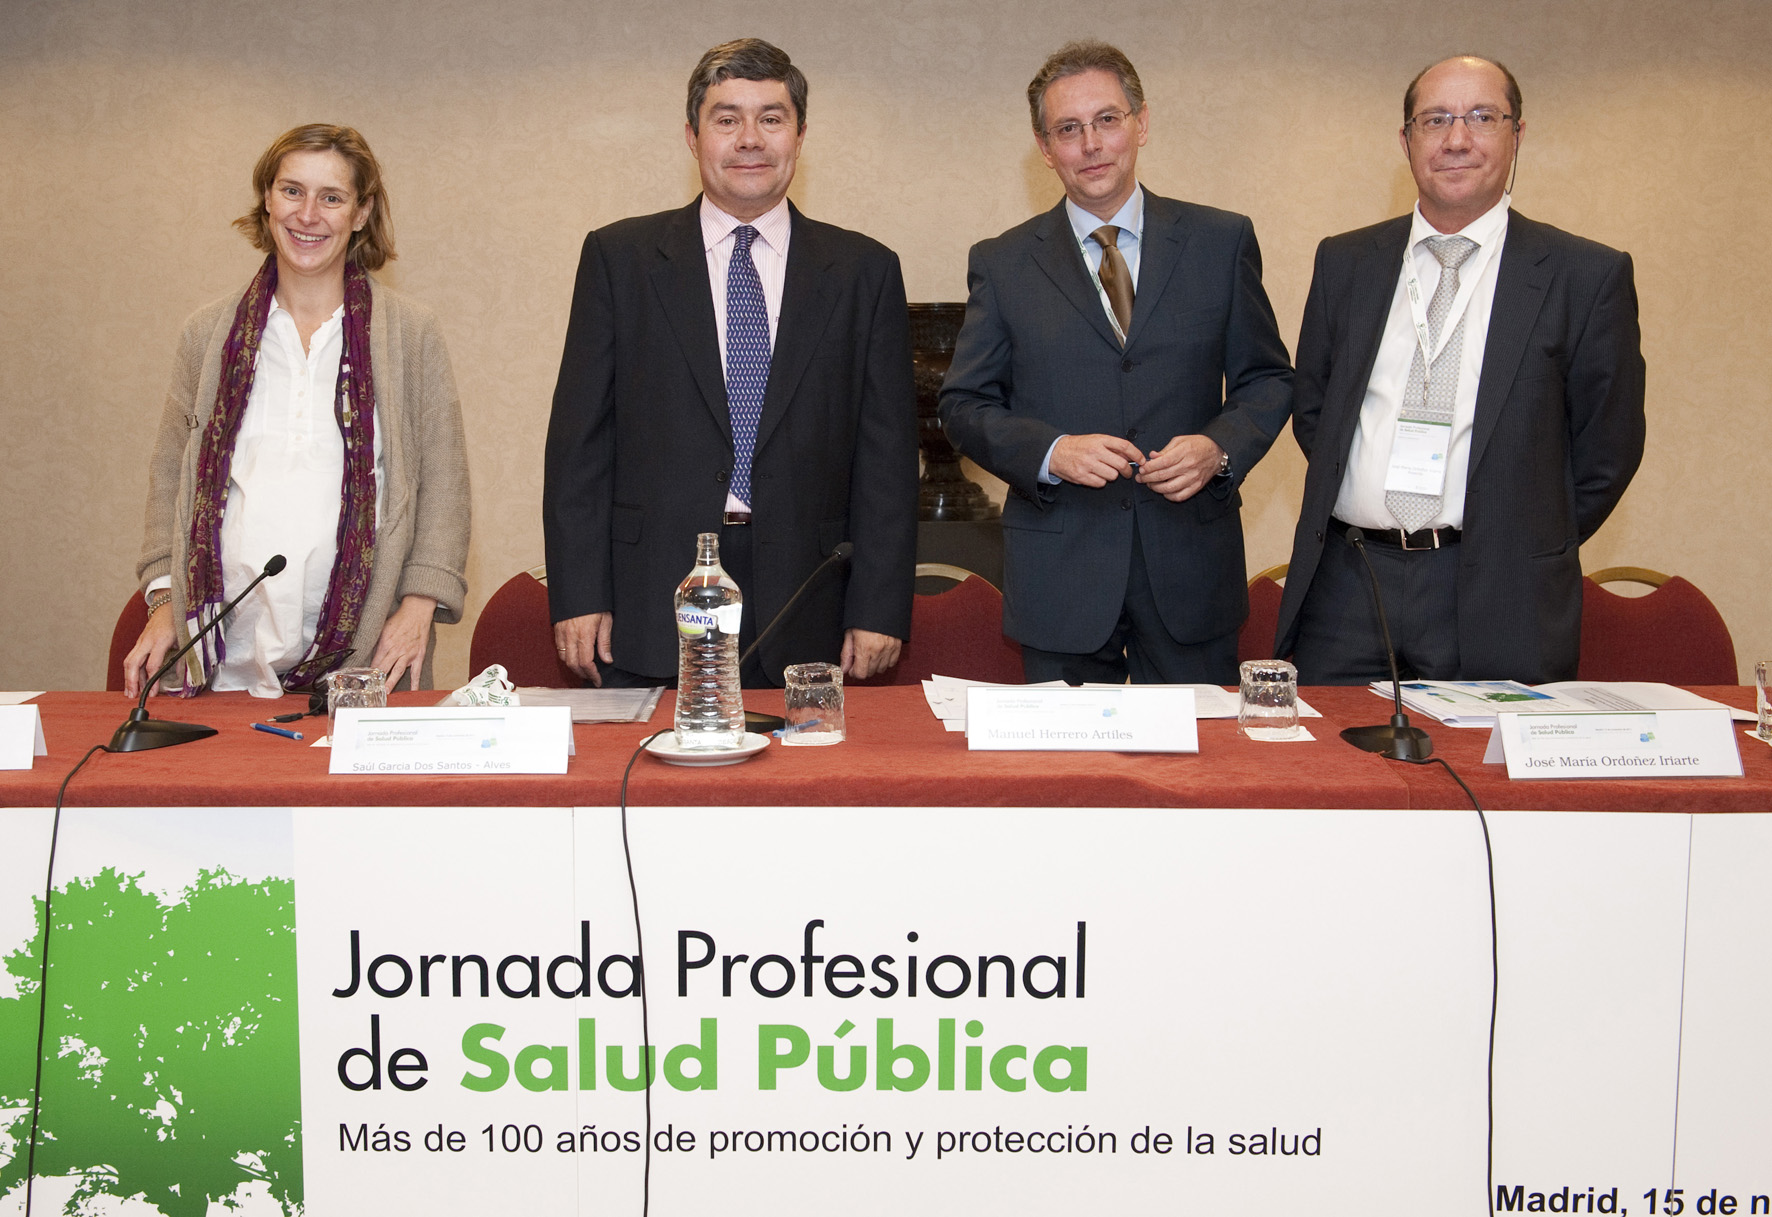 De izqda a dcha: Patricia Cervigón, Saúl García Dos Santos-Alvés, Manuel Herrera y José Mª Ordoñez.